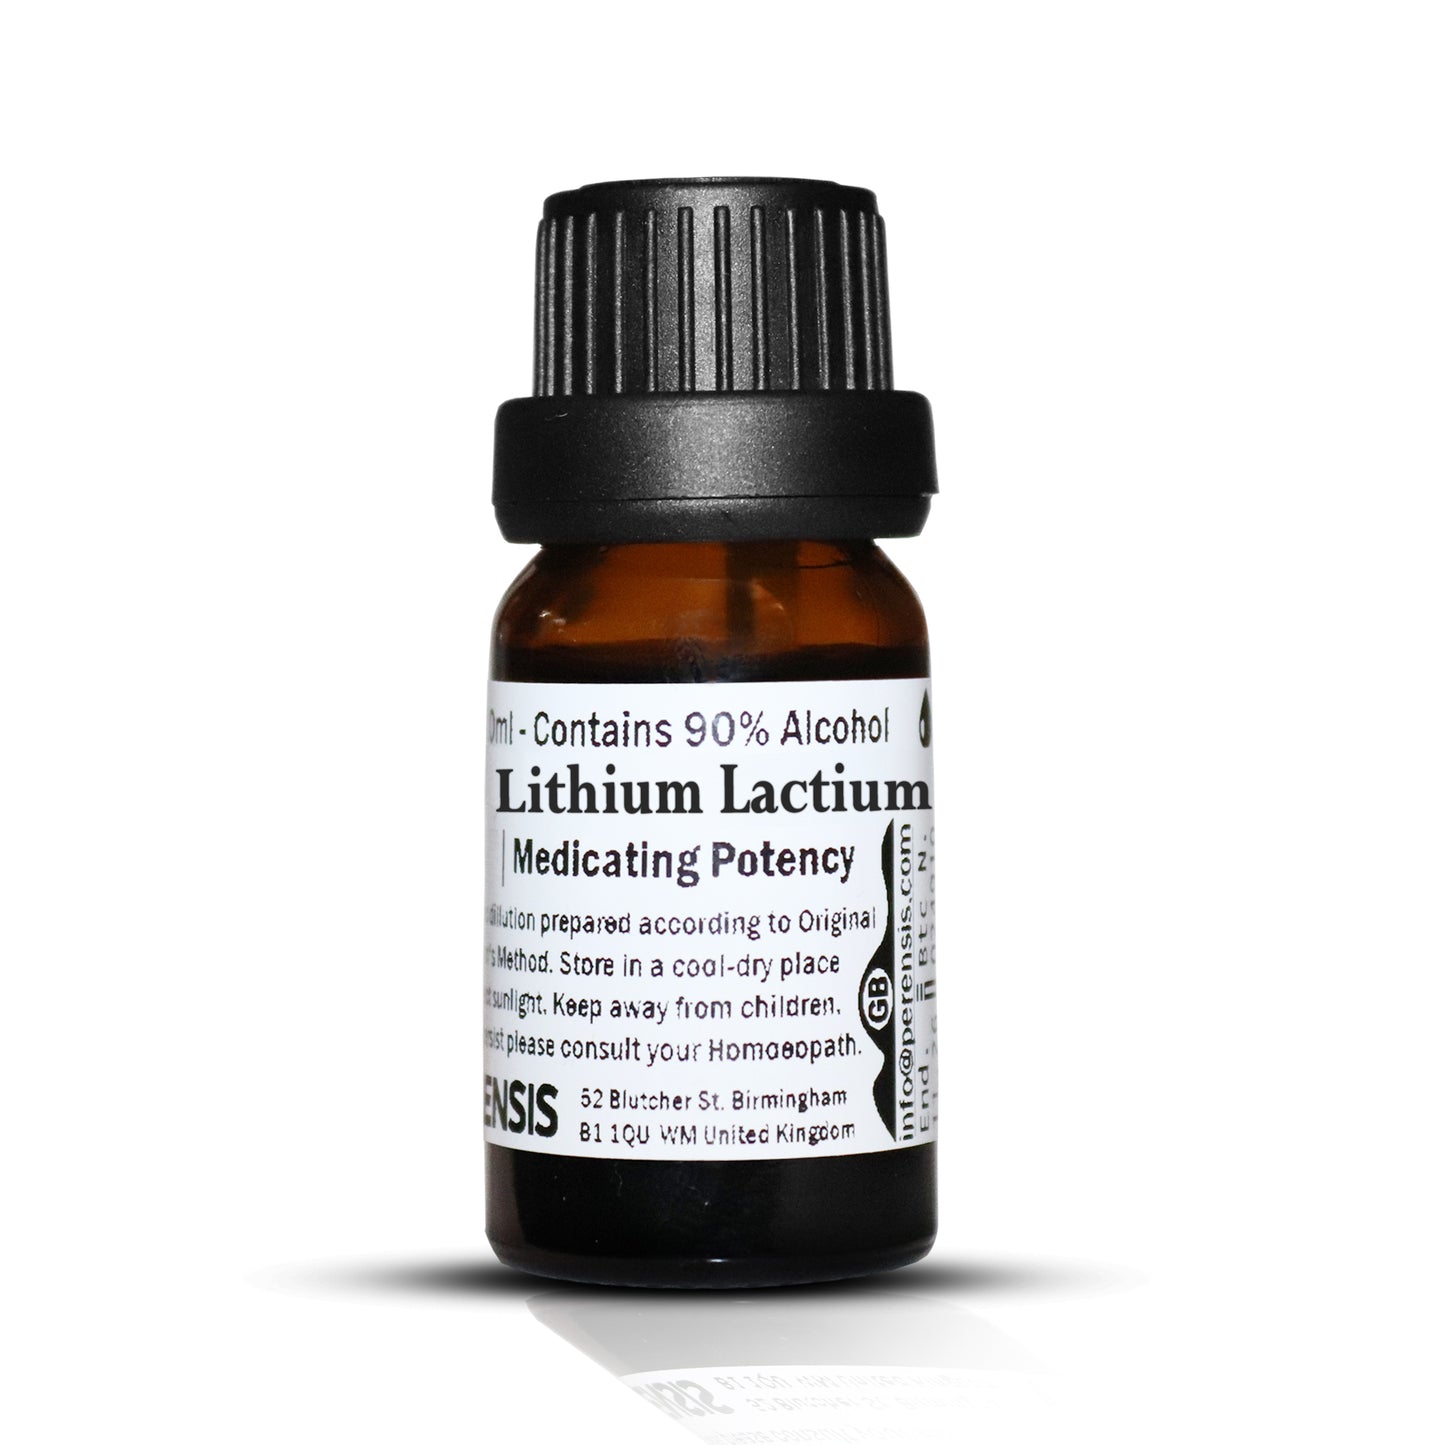 Lithium Lactium